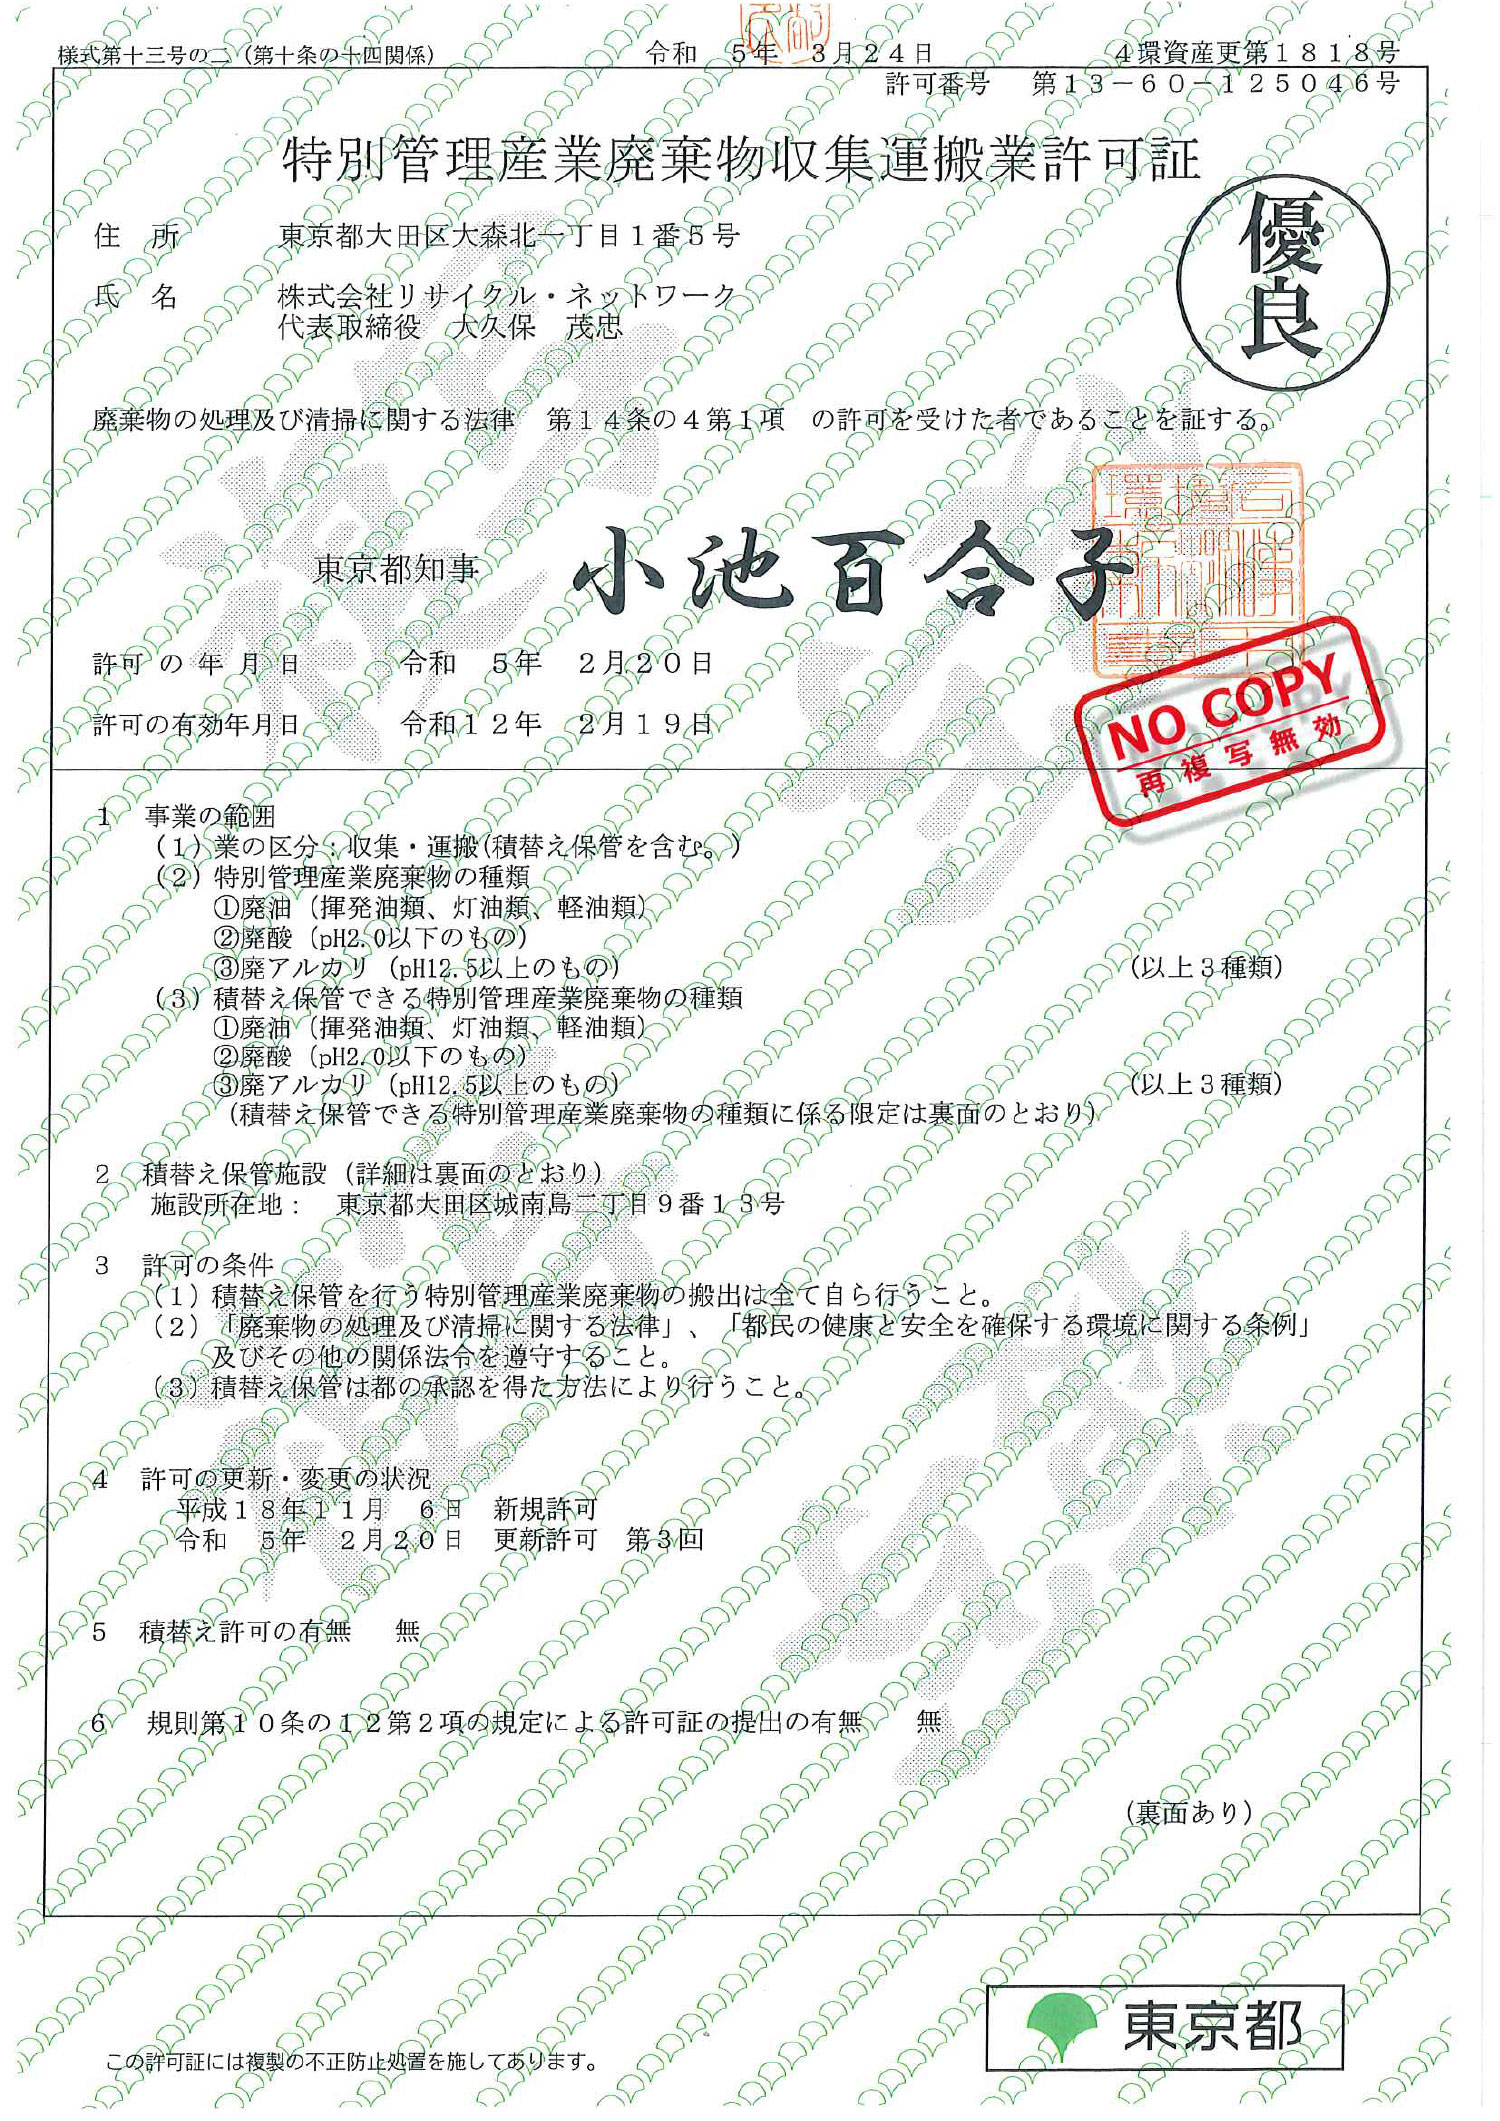 東京都 特別管理産業廃棄物収集運搬許可証